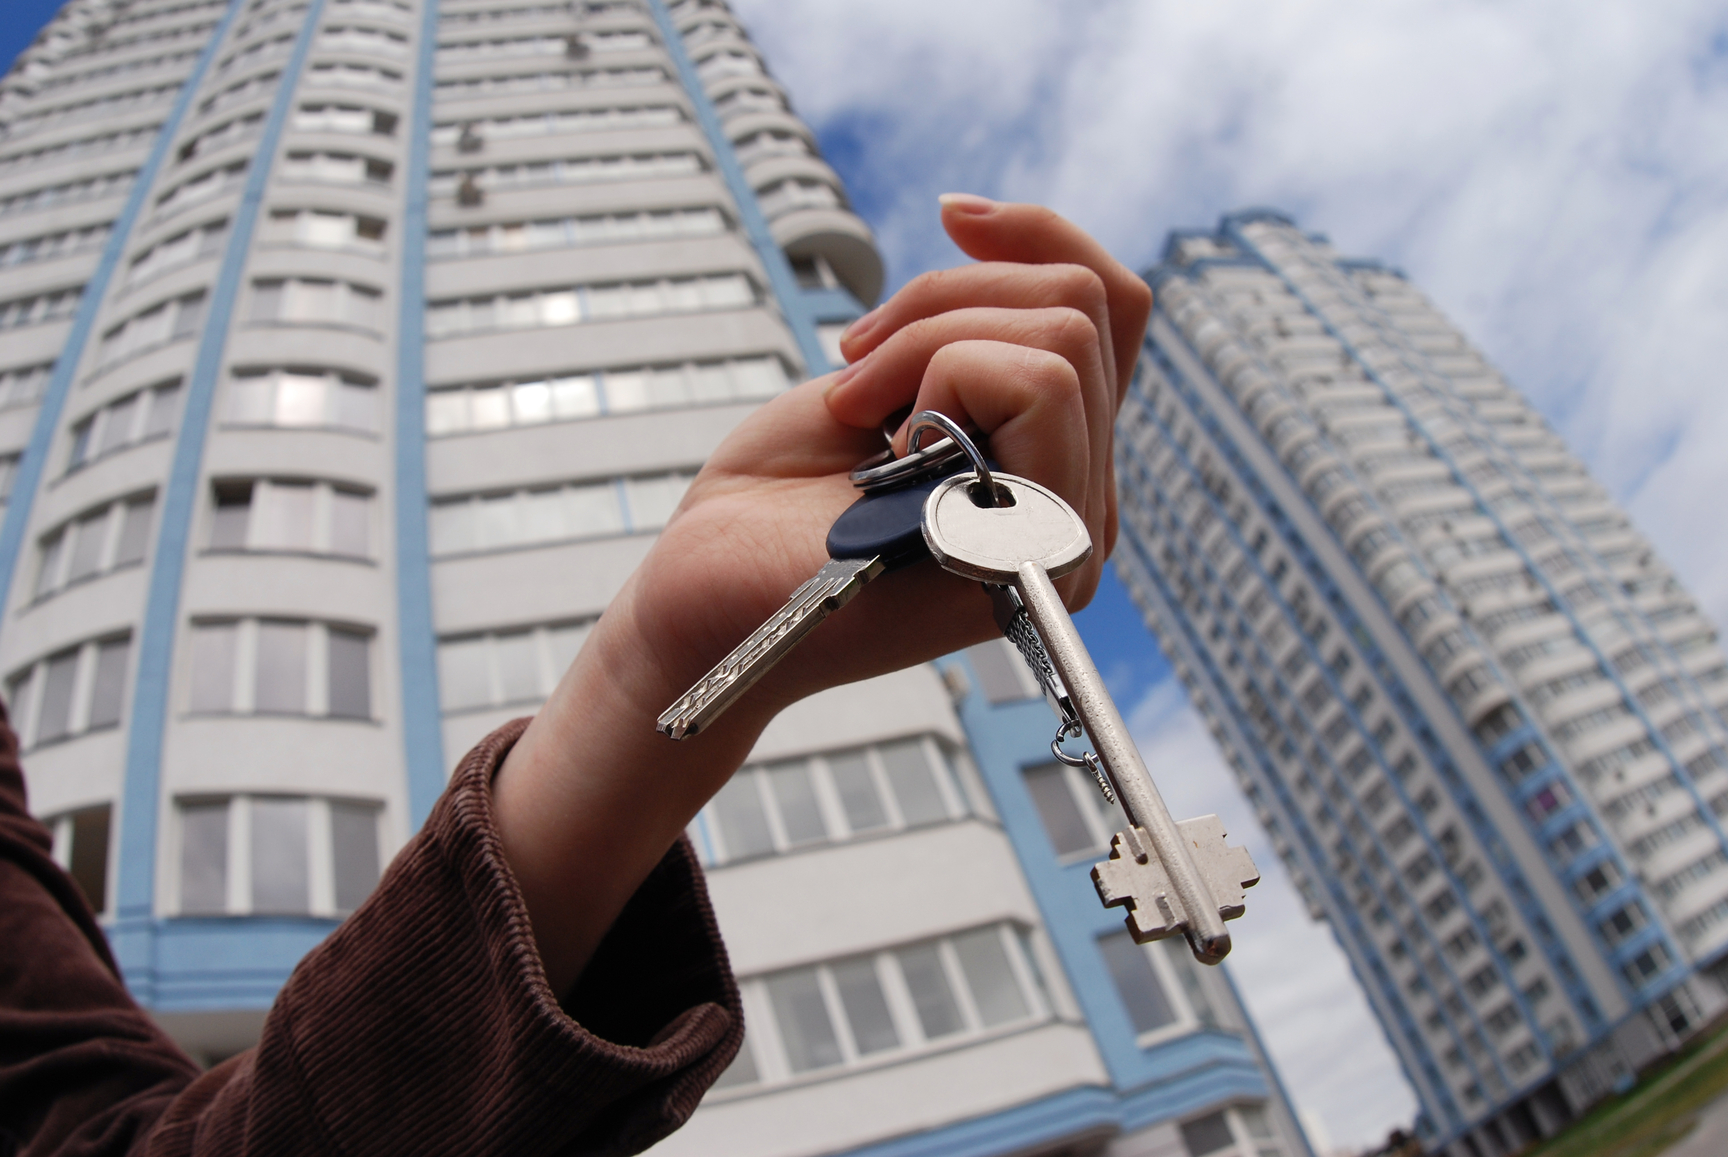 Аренда жилья в россии. Ключи от квартиры. Квартира ключи. Ключи от квартиры в руке. Ключи от новой квартиры.